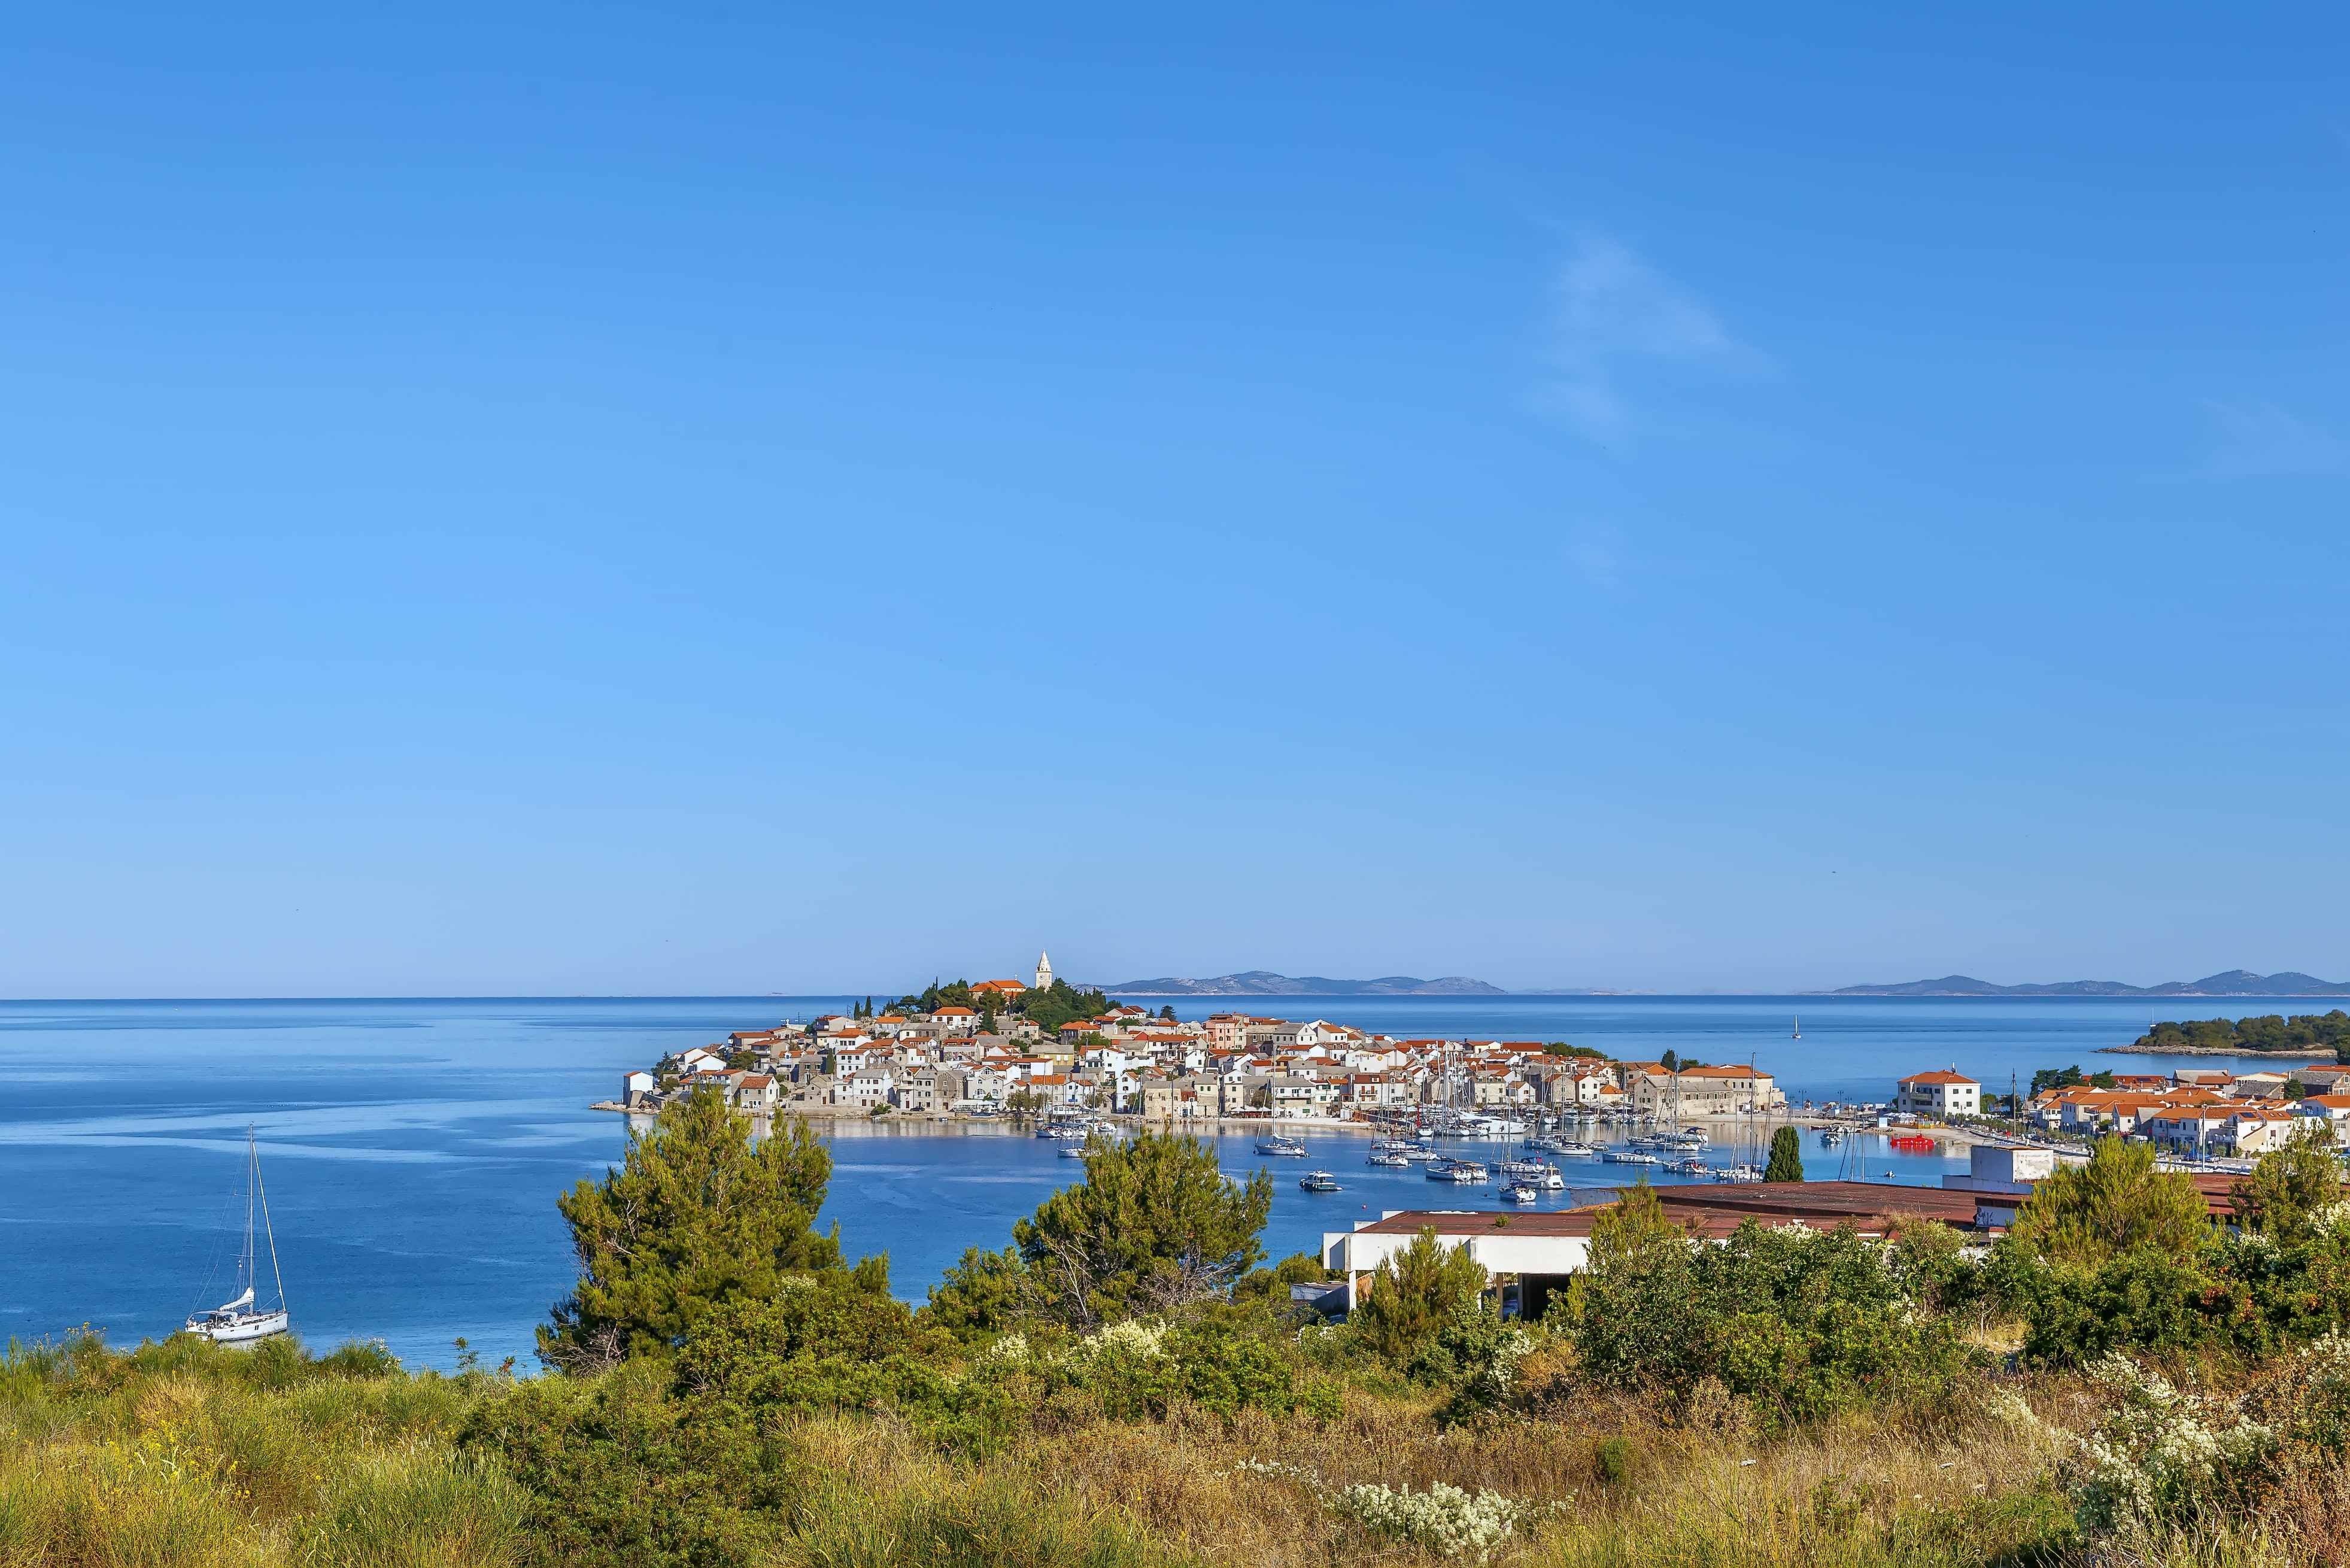 Вид на исторический город Рогозница на полуострове в море, Хорватия